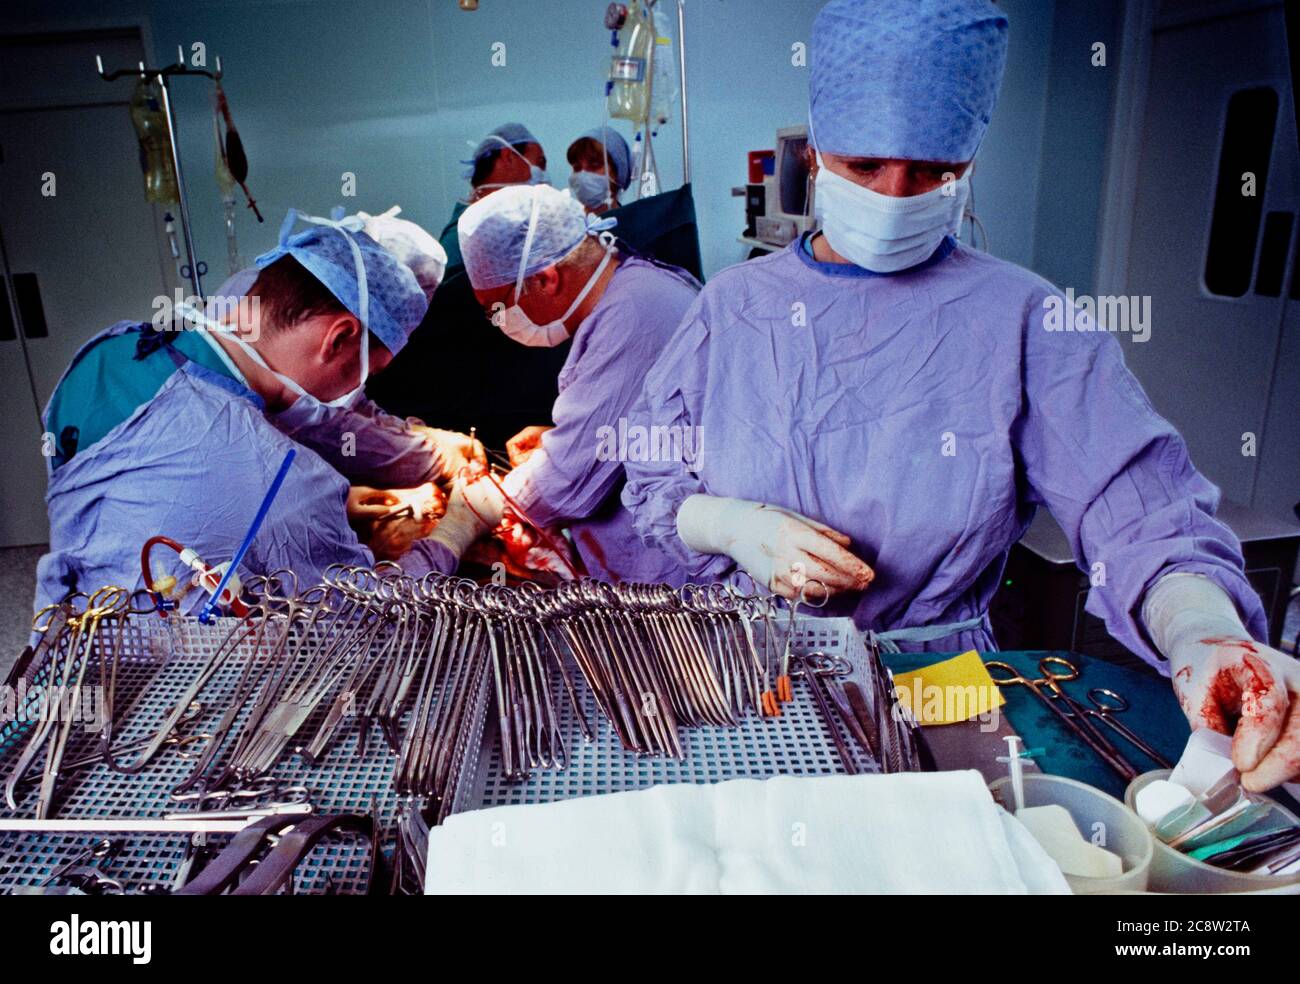 Plateau d'instruments chirurgicaux dans la zone stérile d'un bloc opératoire Banque D'Images